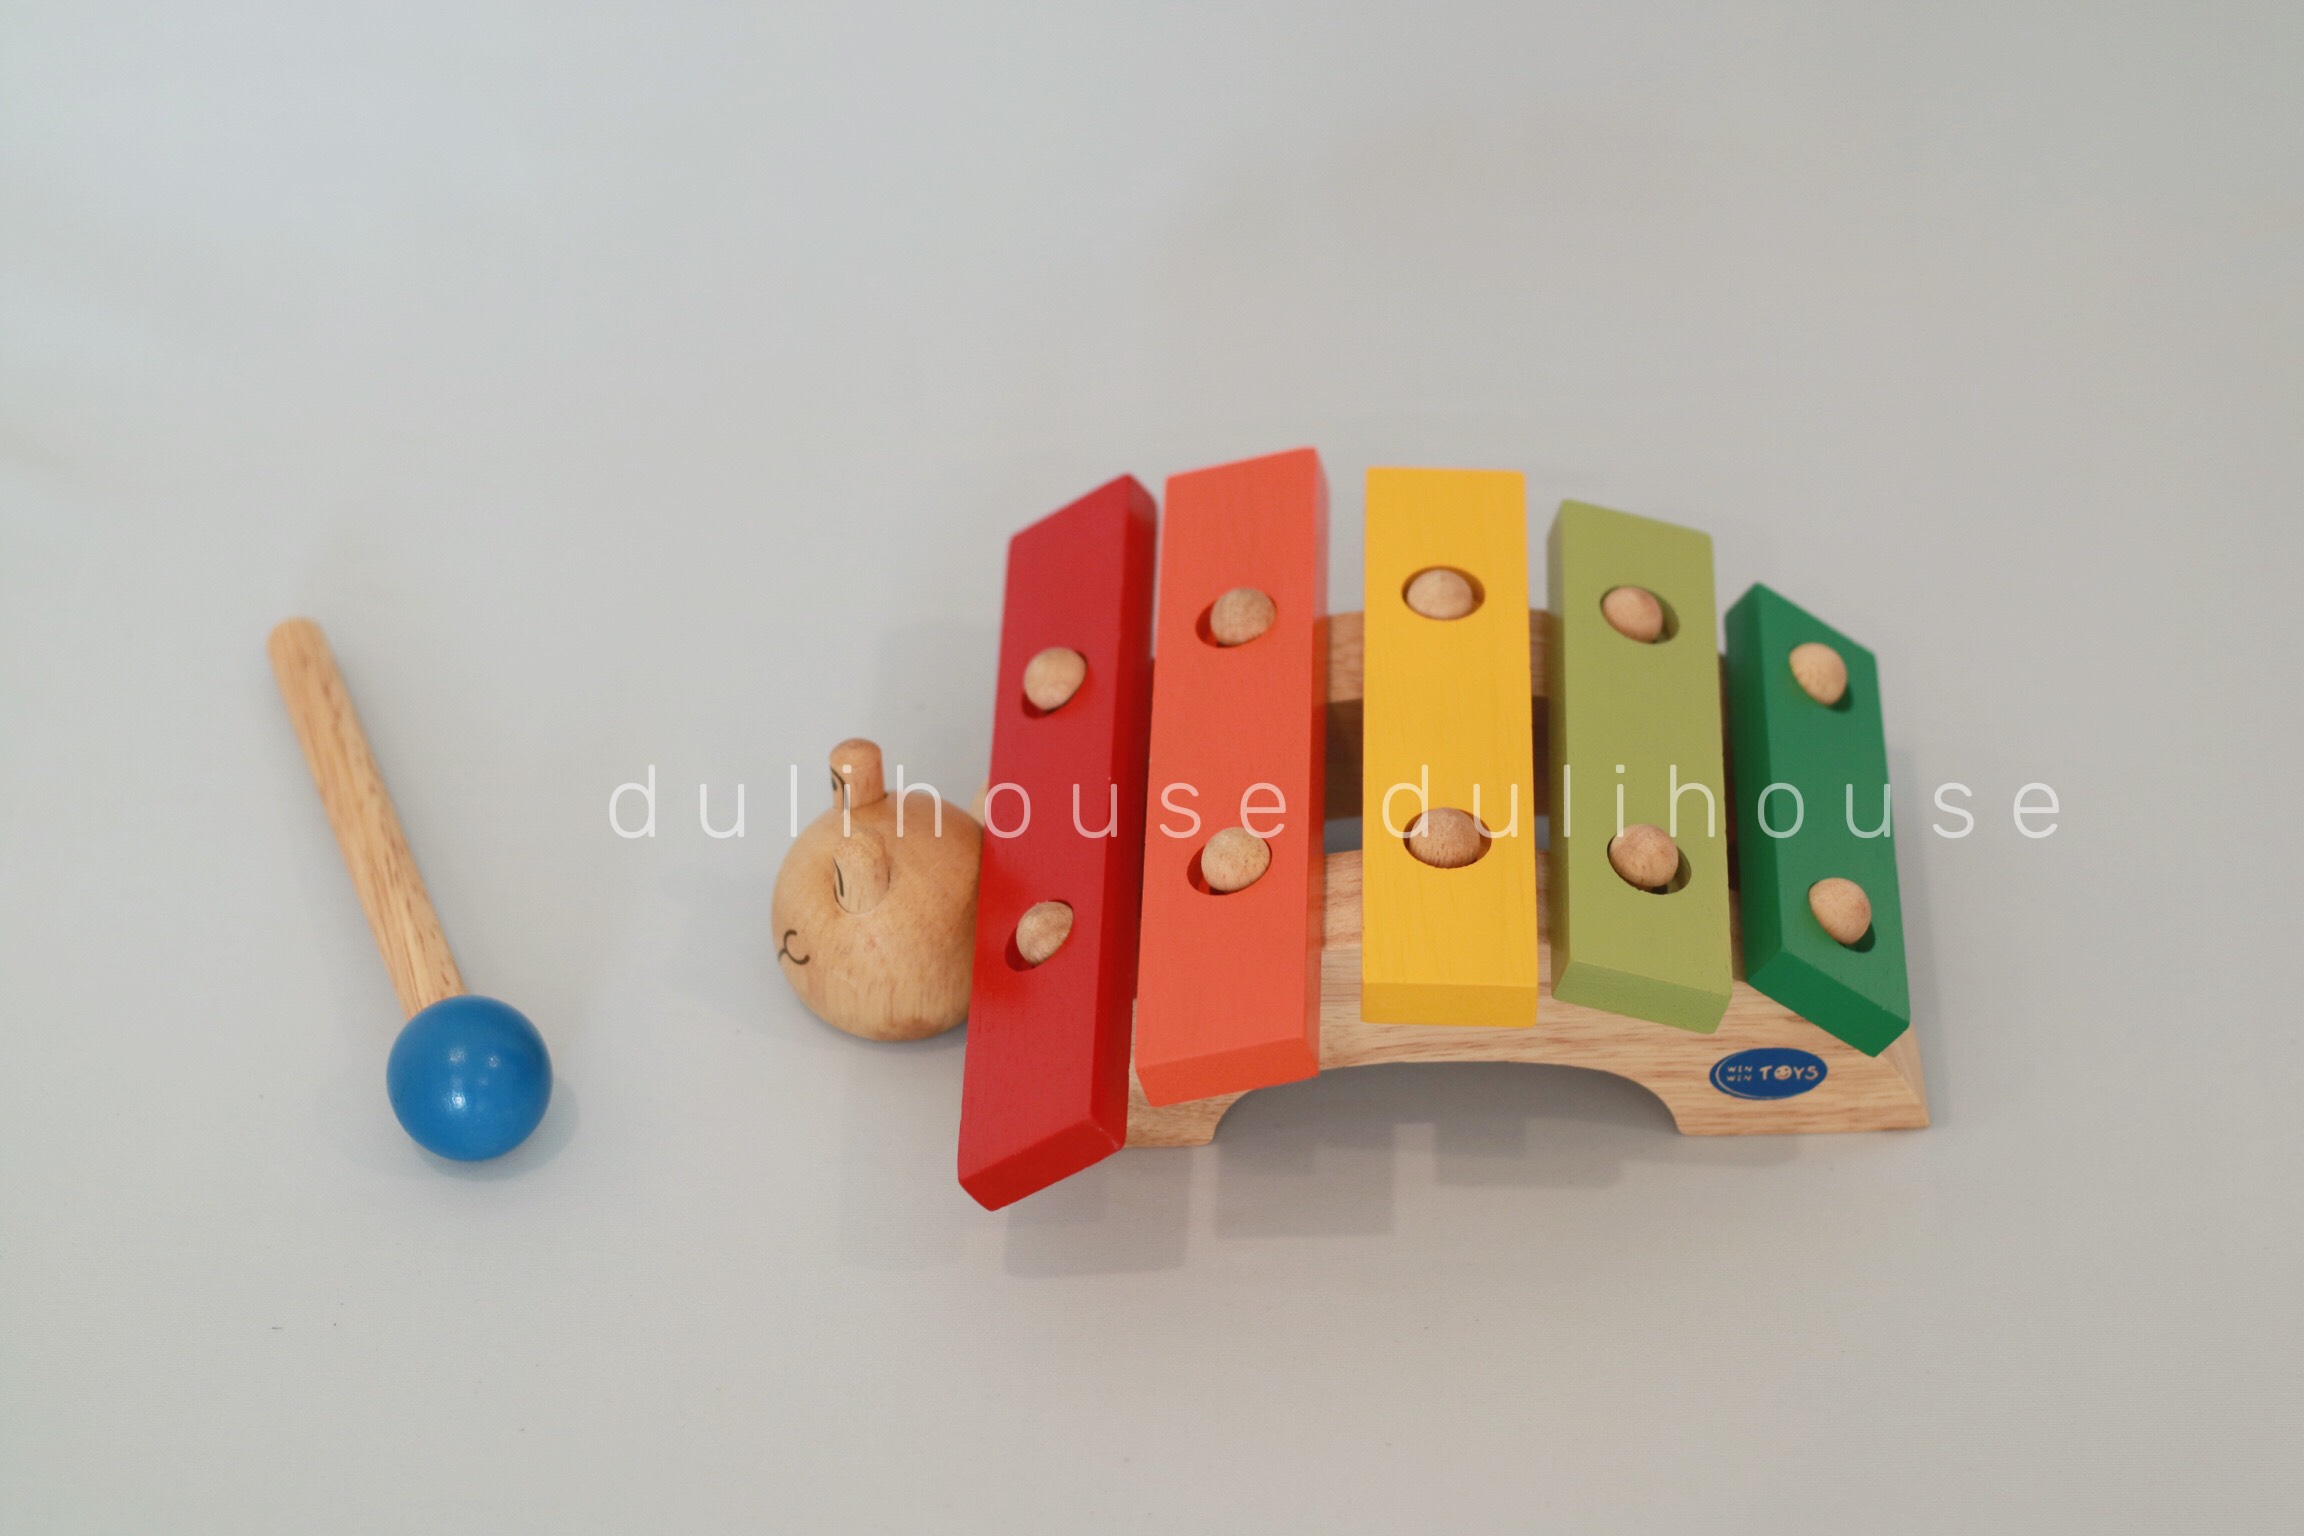 Đồ chơi gỗ cao cấp Đàn hình rùa, giúp bé phân biệt được các màu sắc cơ bản, phát triển trí não, tâm hồn một cách toàn diện, kết hợp tốt giữa tay và mắt, tạo sự khéo léo, nhanh nhẹn - Sản xuất tại Việt Nam